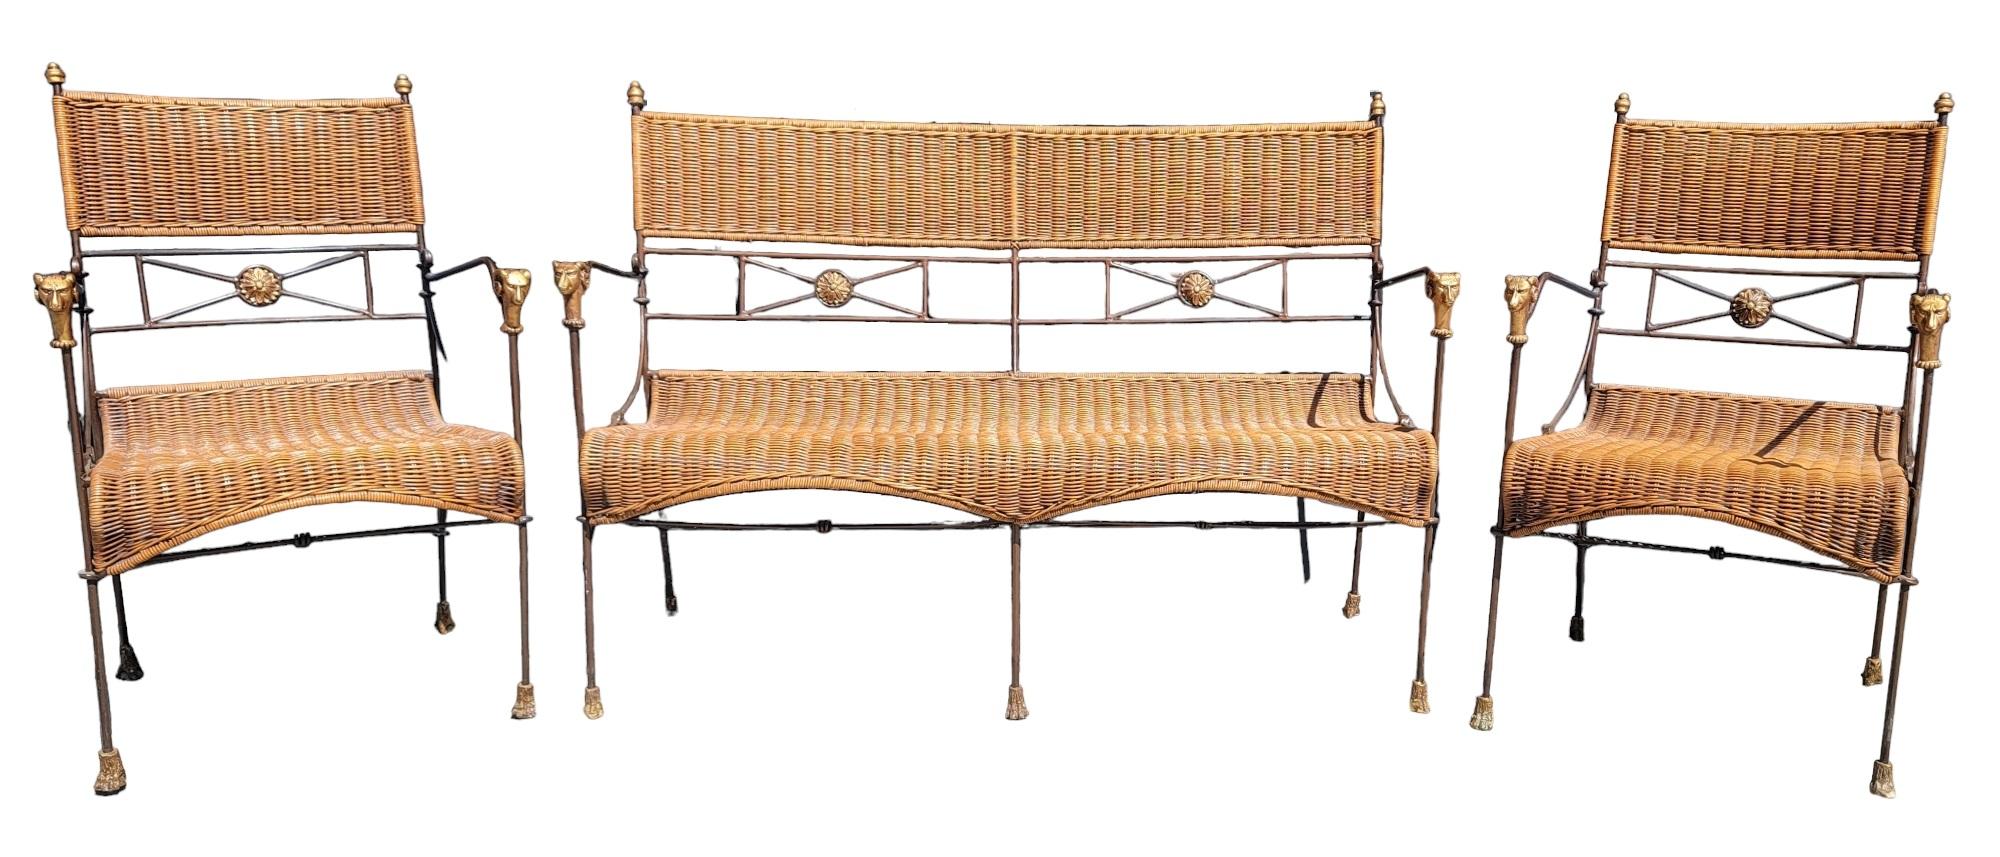 Set von drei Eisen und Wicker Settee und Stuhl von Giacometti. An den Armlehnen befinden sich Widderköpfe. In der Rückenlehne befindet sich ein Sonnenblumen-Emblem/Design auf der Unterseite. 
An der Oberseite der Stühle sind kleine Endstücke